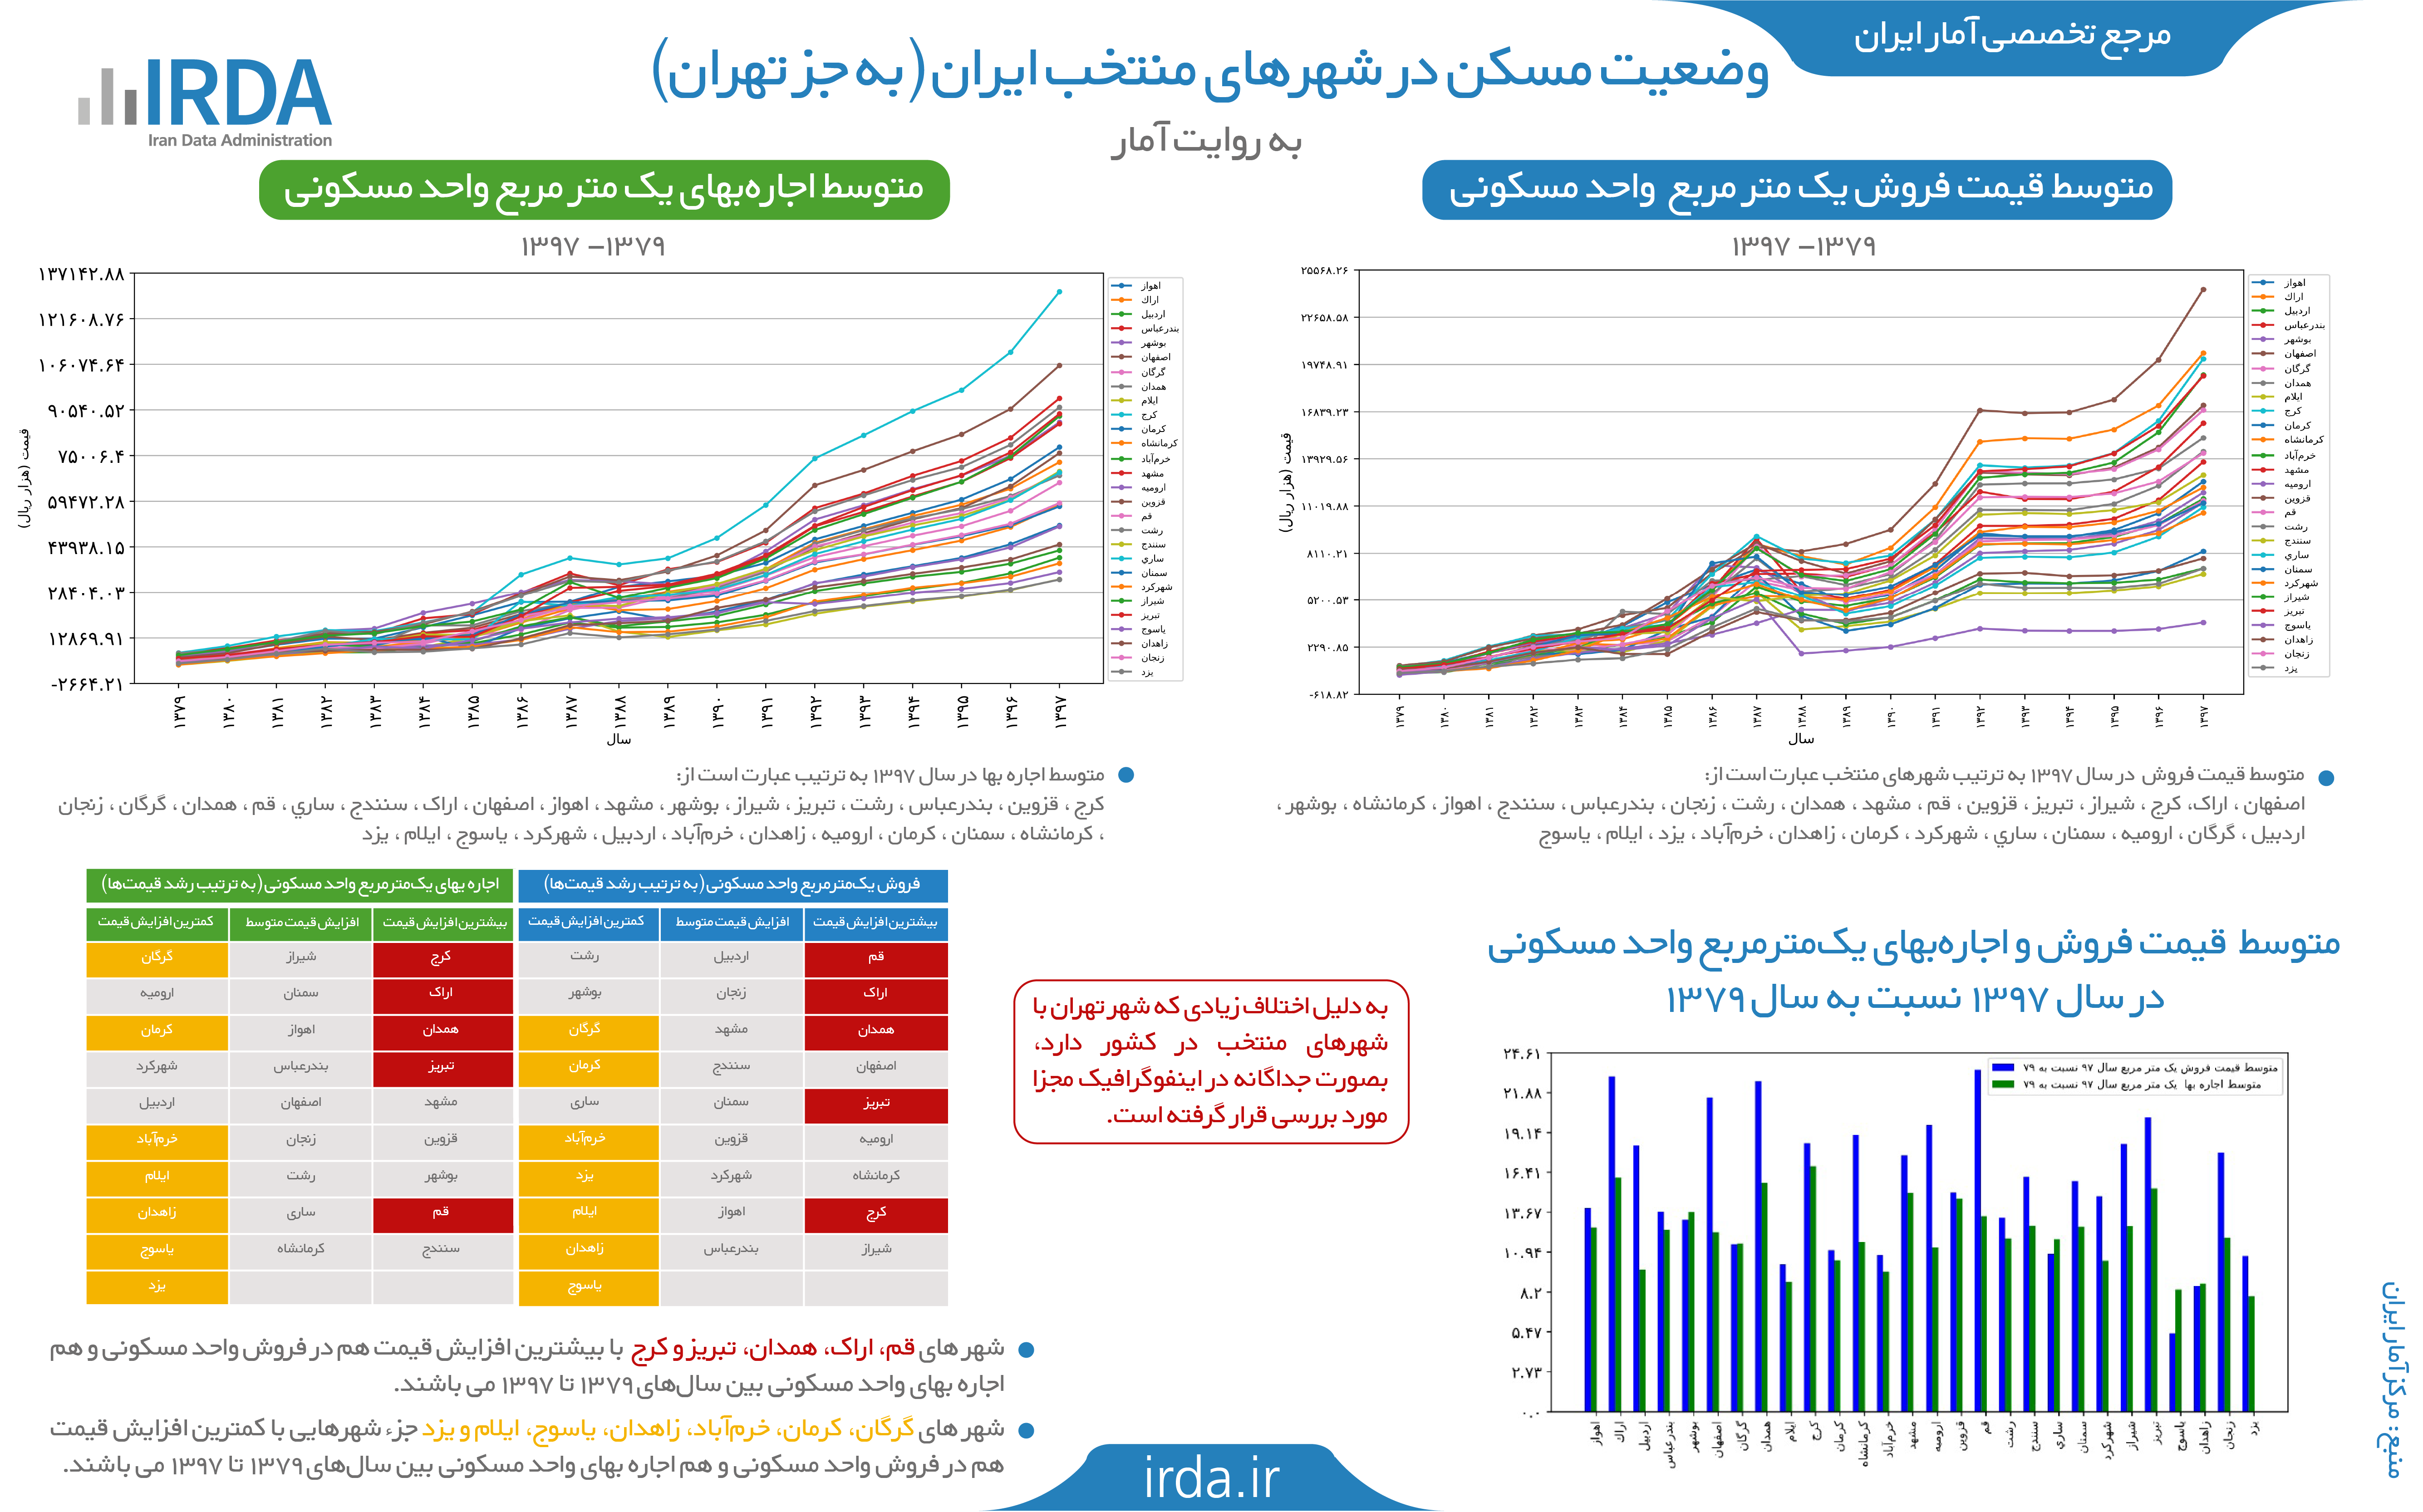 وضعیت مسکن در شهرهای منتخب ایران (به جز تهران)